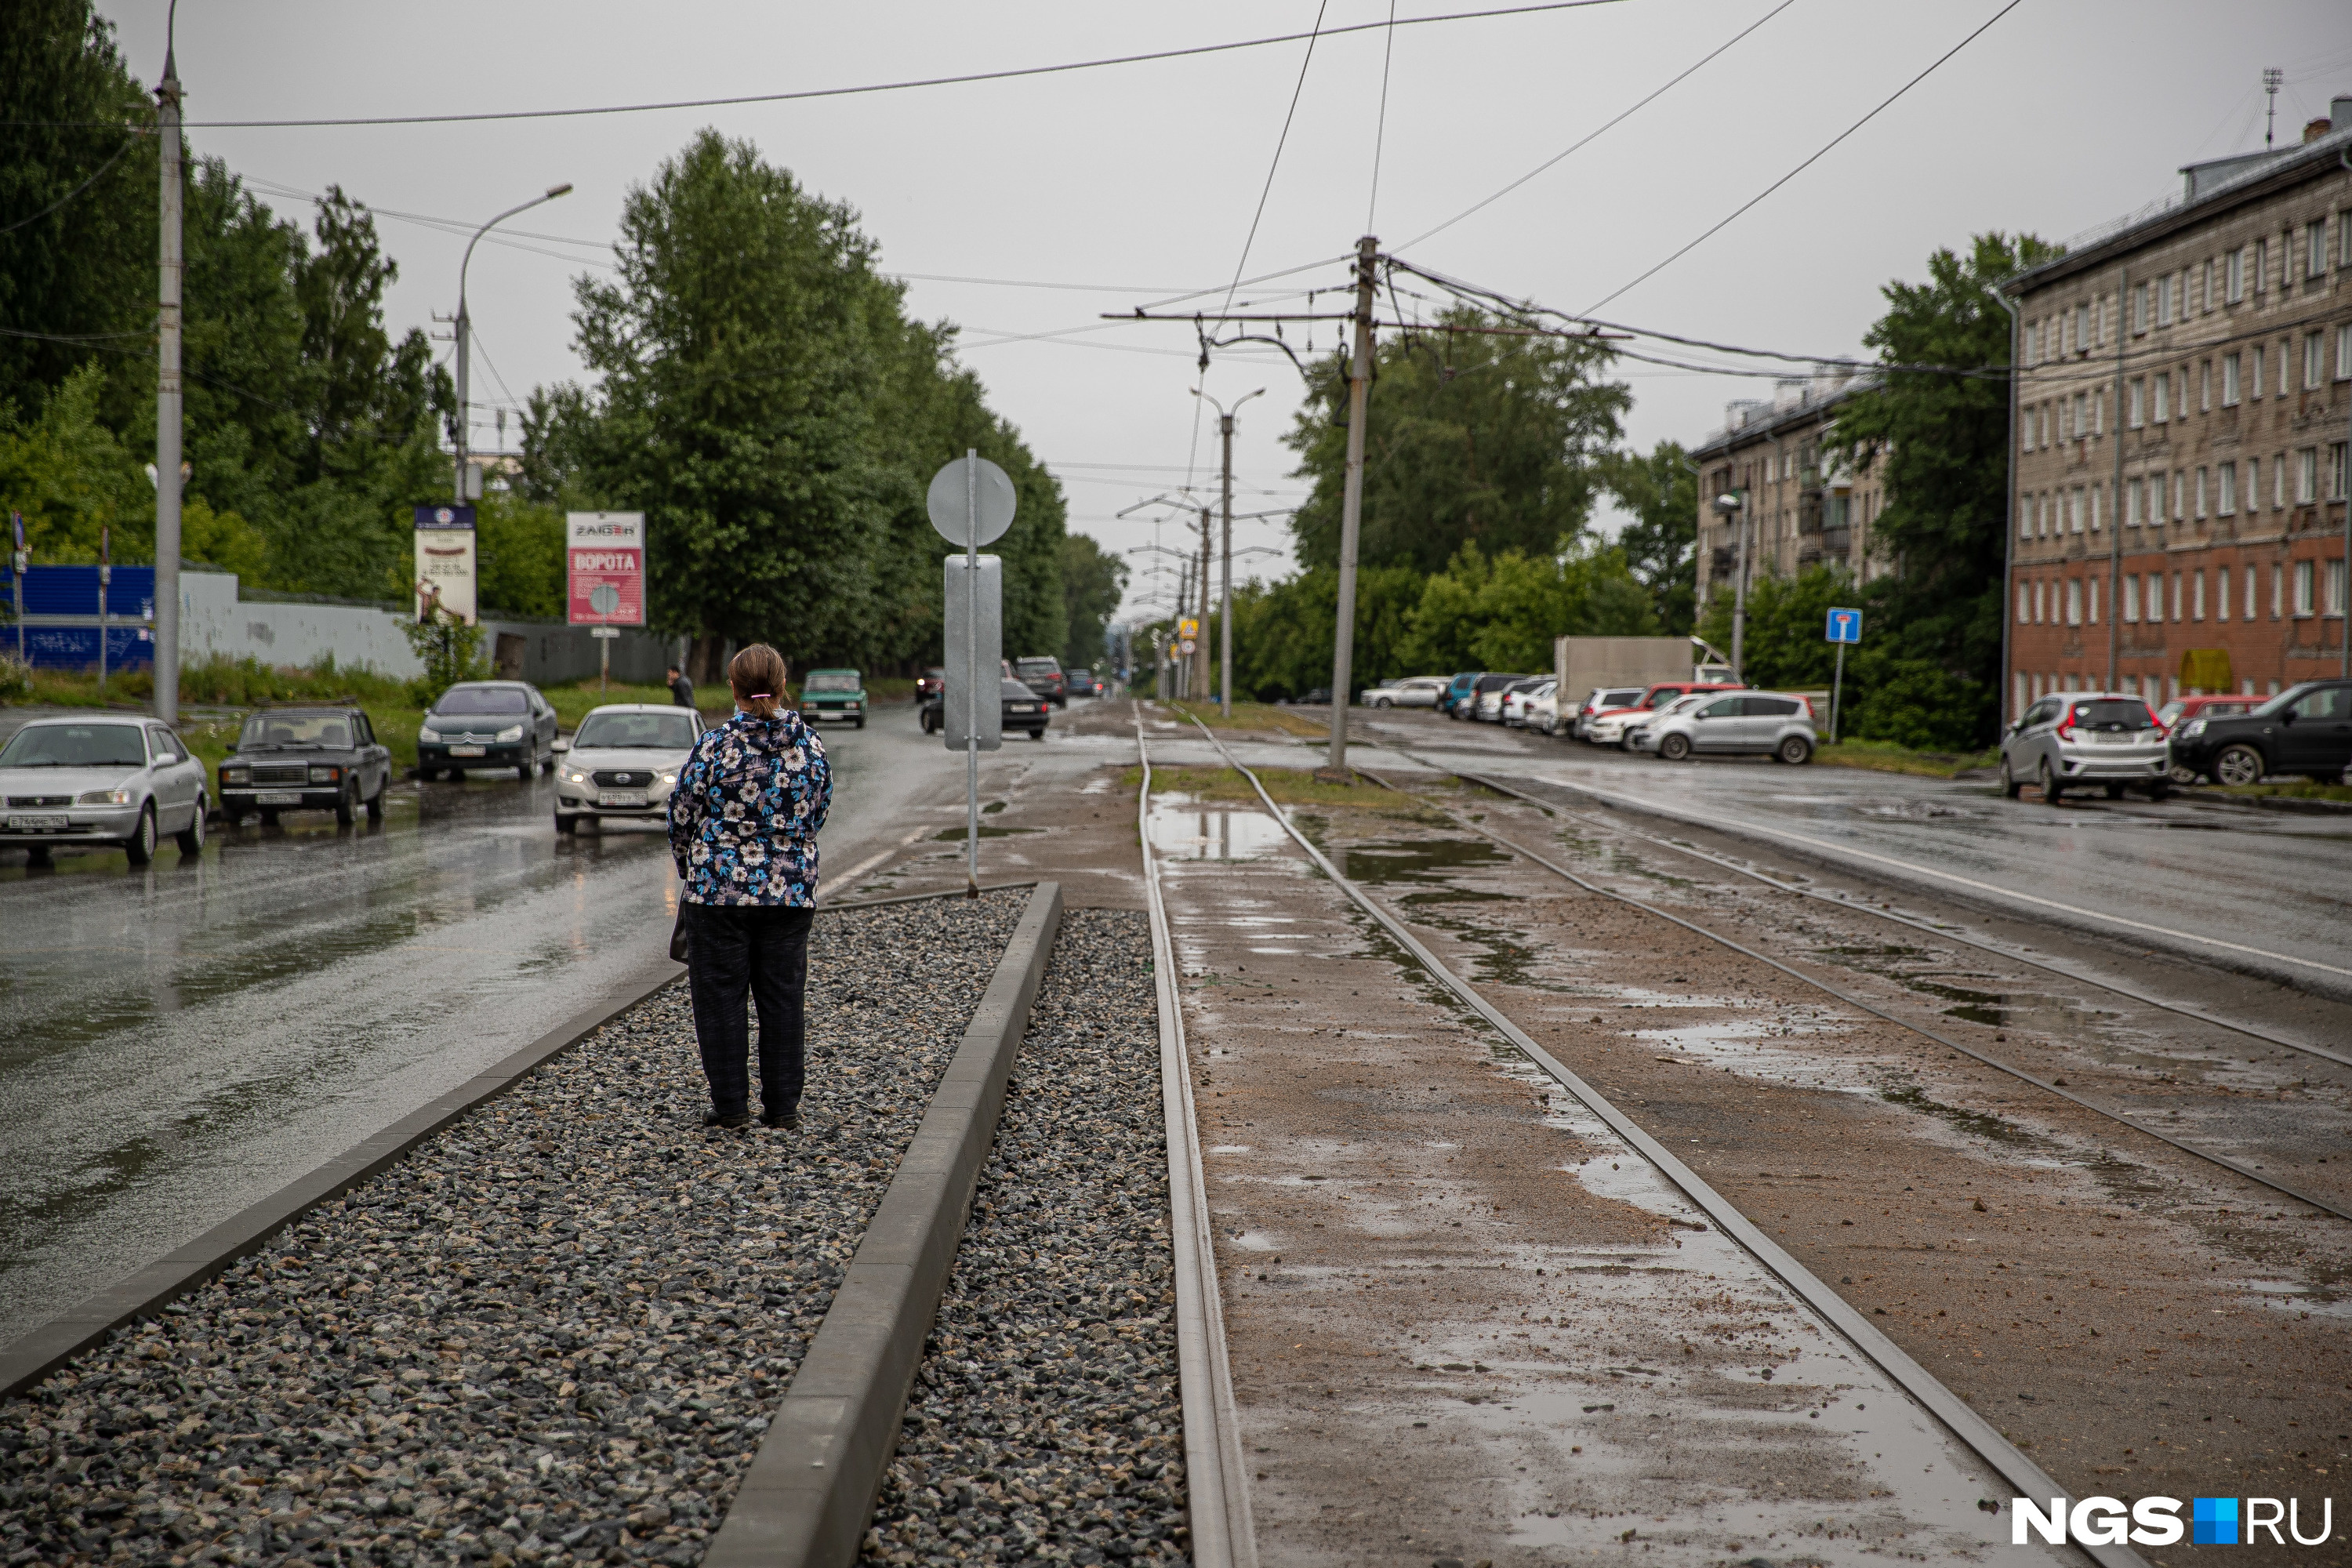 Этим летом на проспекте Дзержинского начали строить остановочные платформы: это обезопасит пассажиров трамваев, но отберет у автомобилистов полполосы